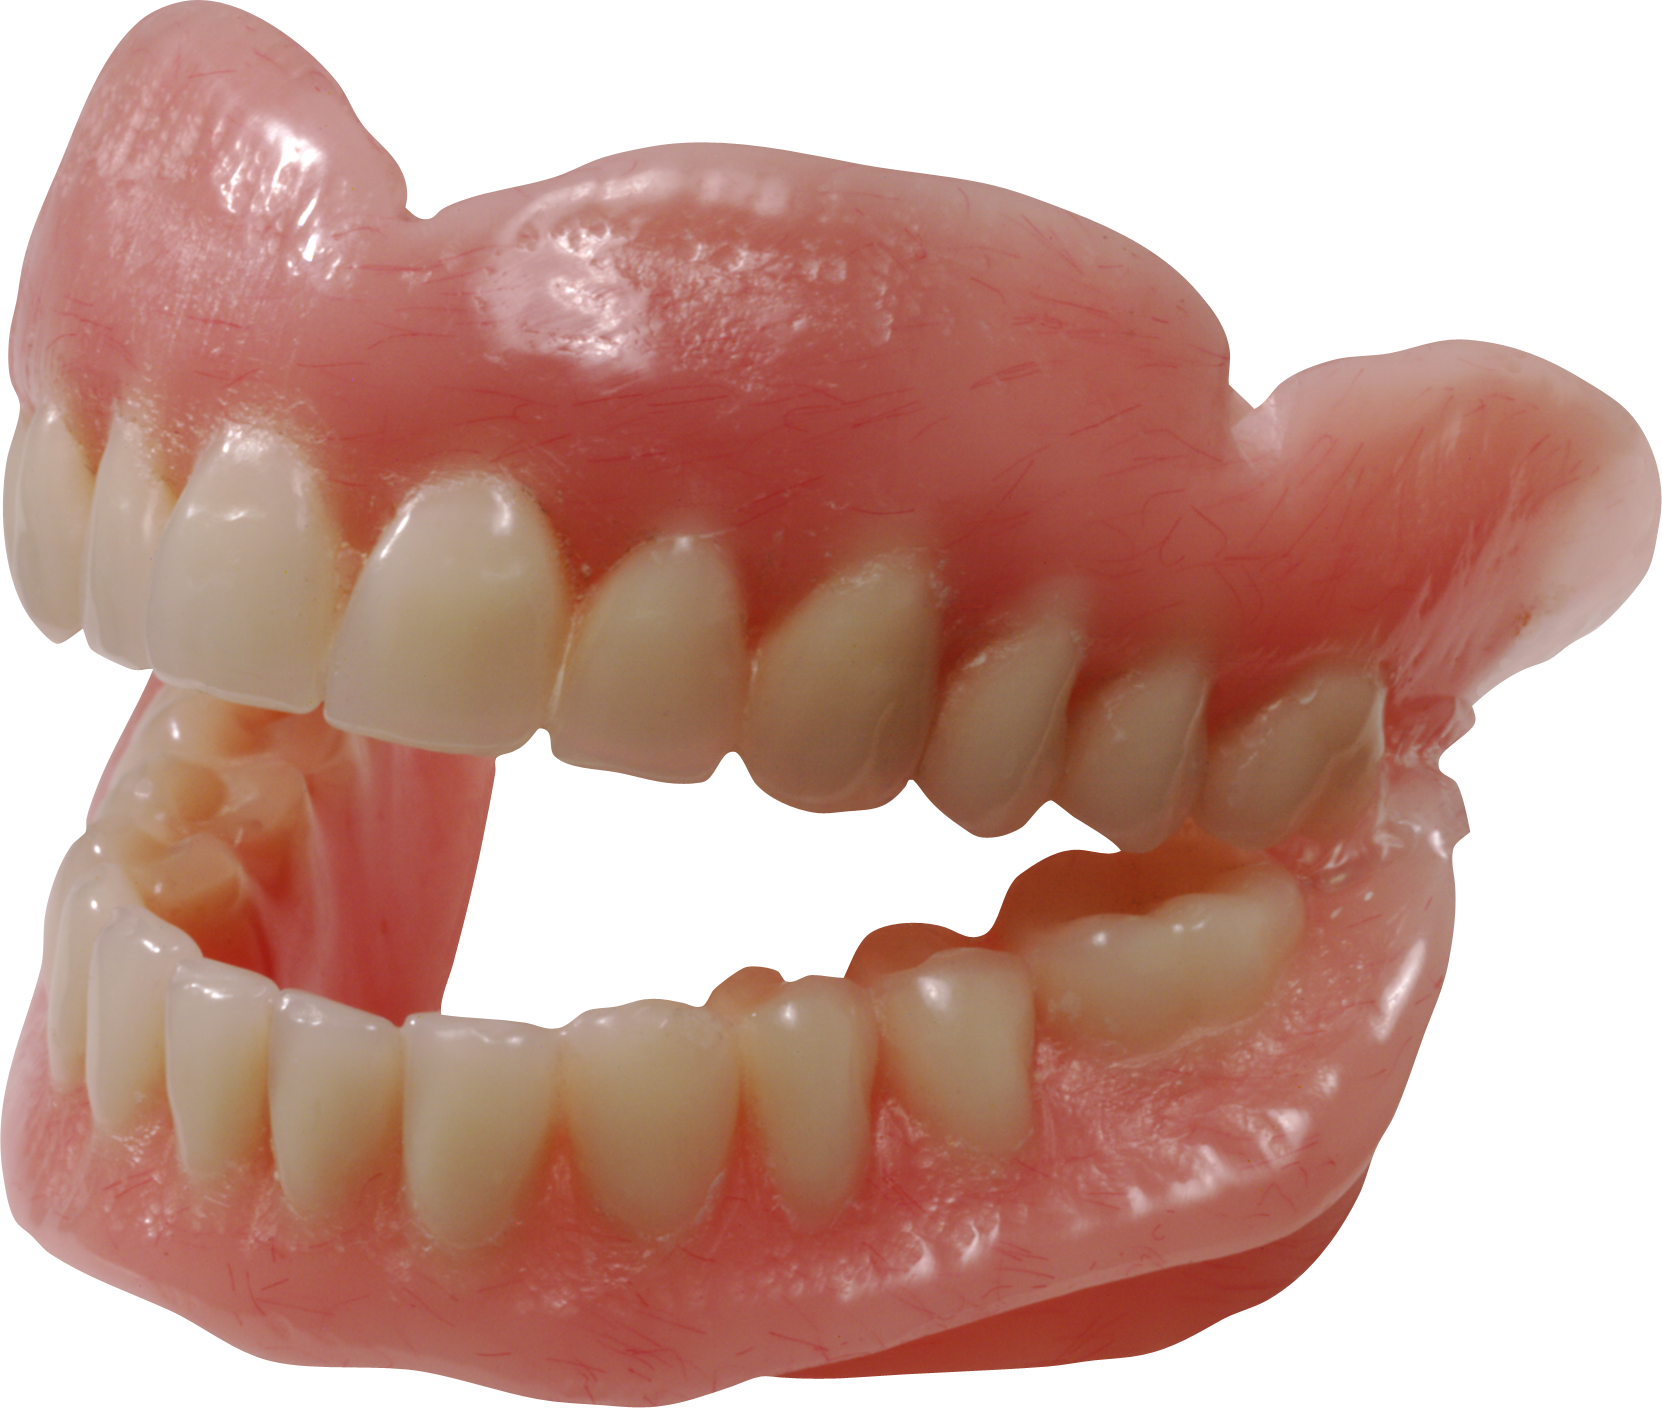 A Close Up Of A Fake Teeth